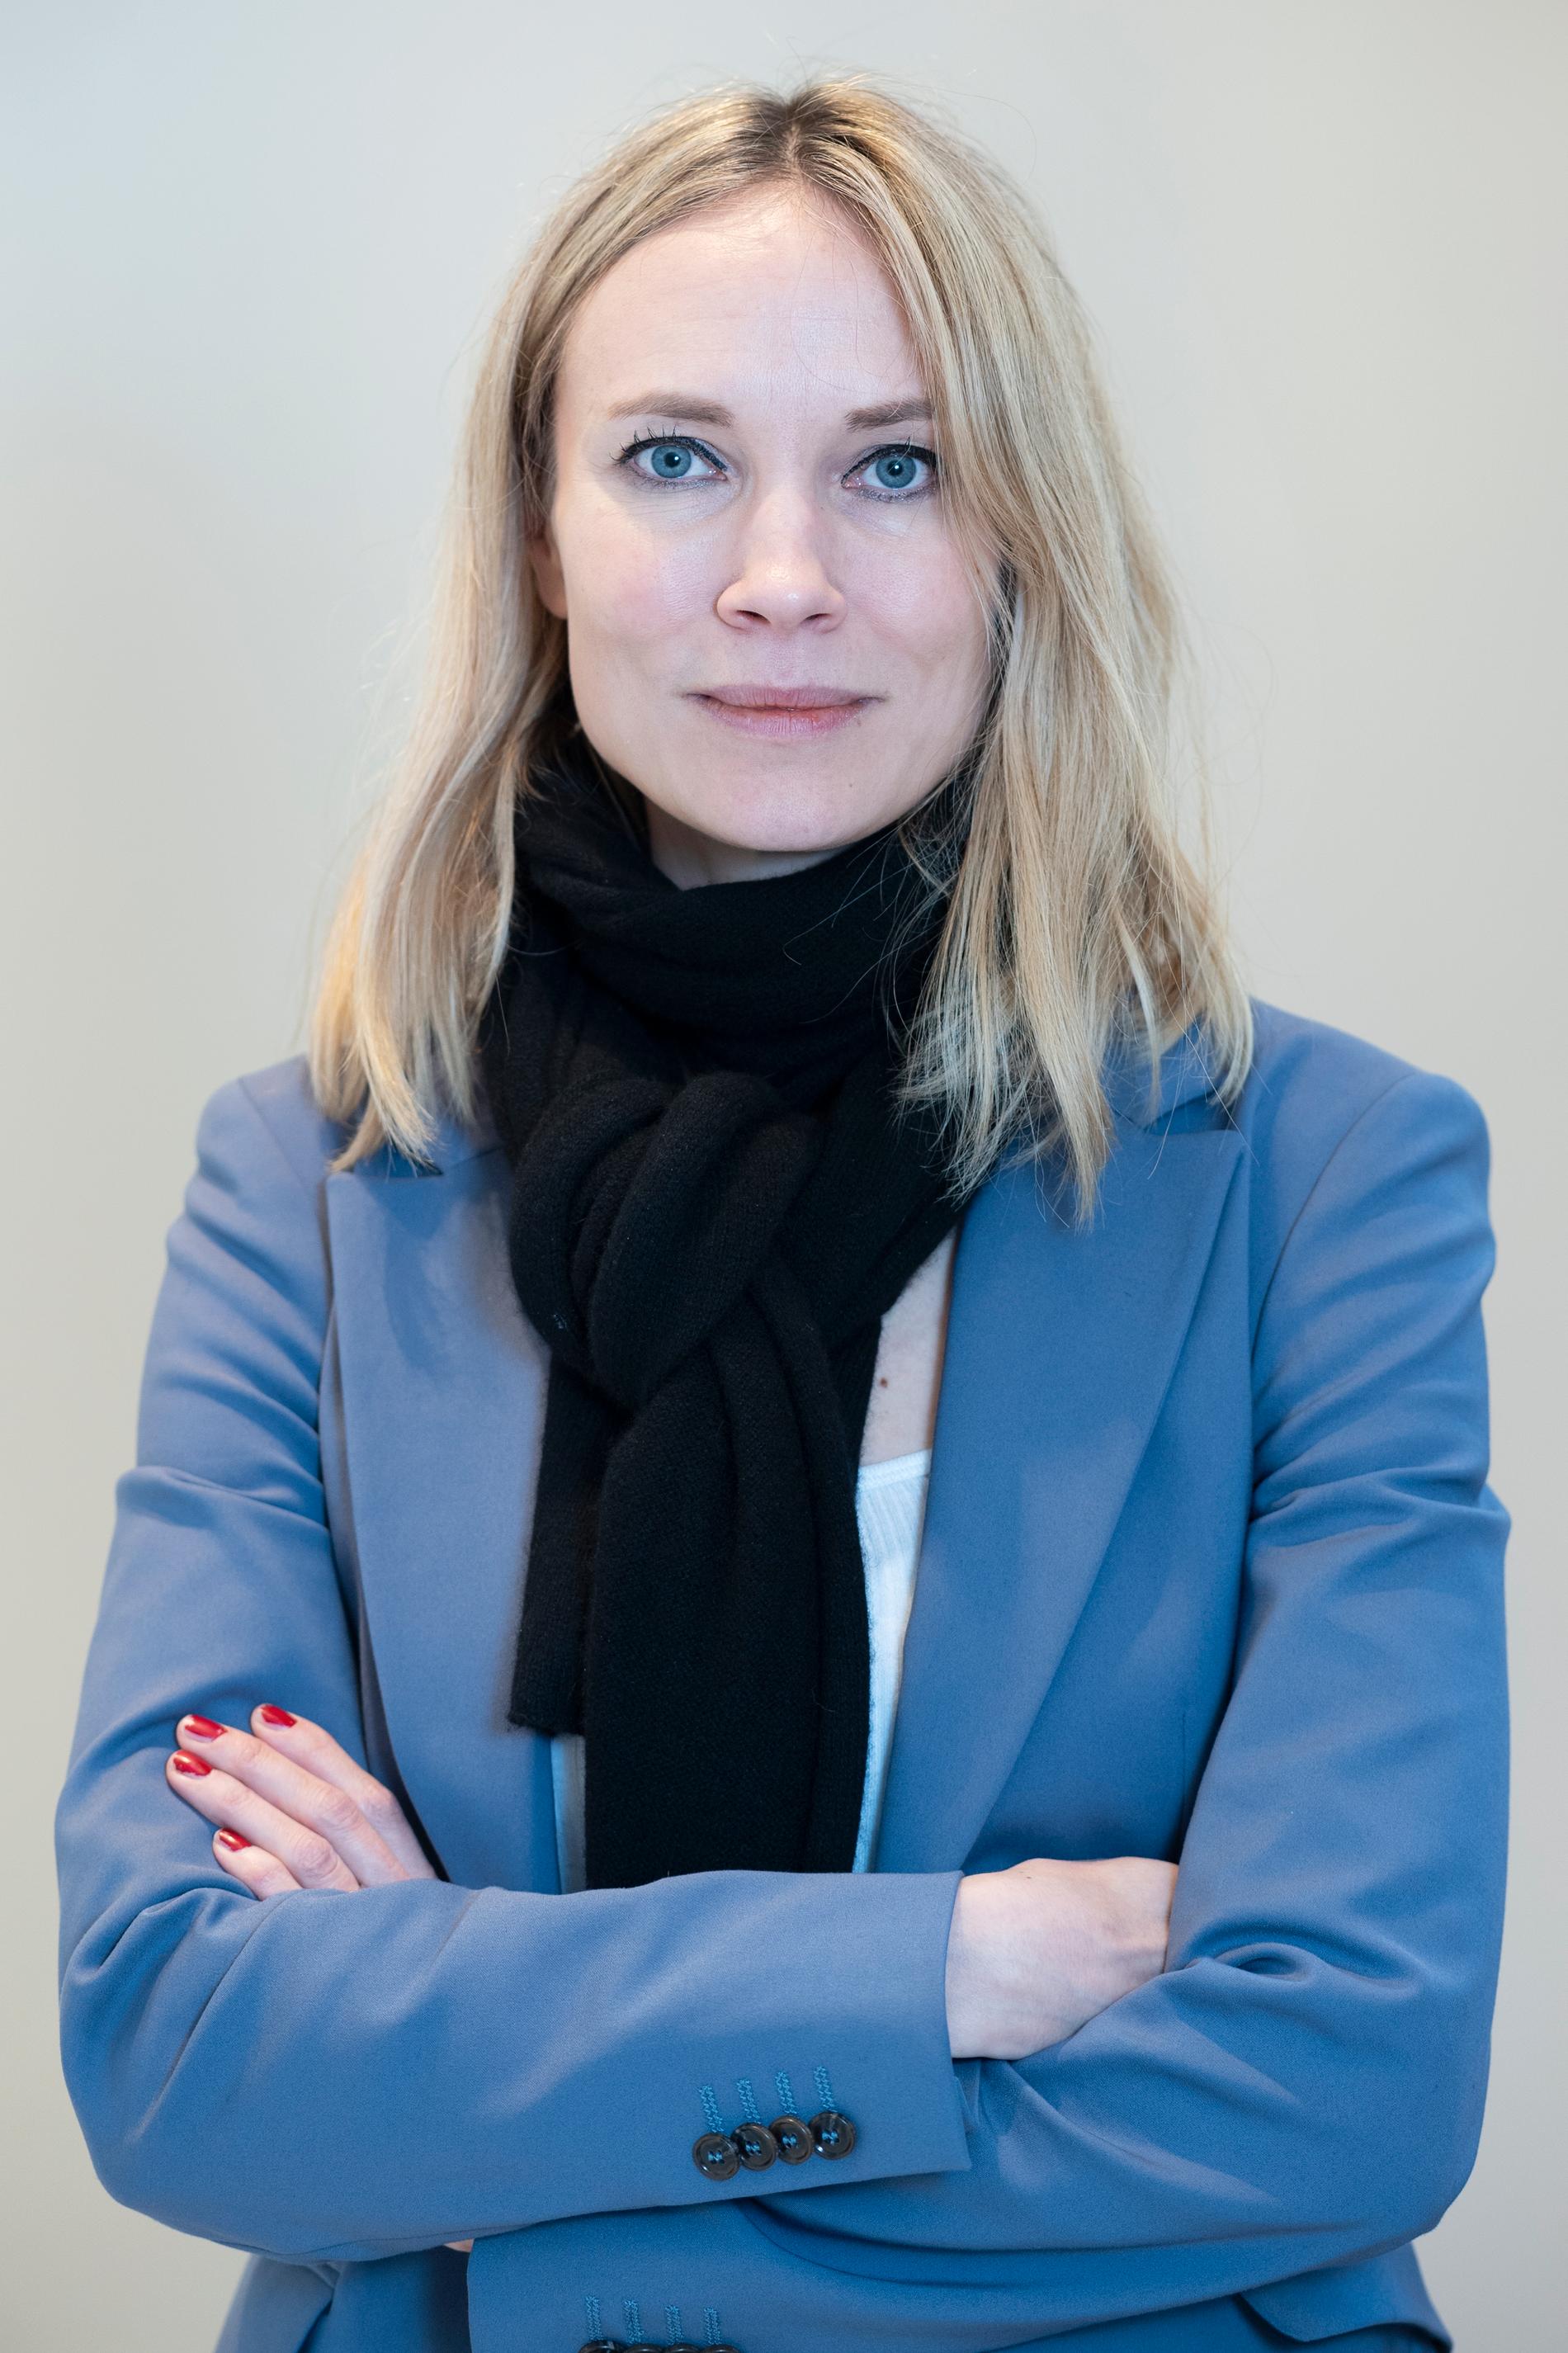 Moa Gammel regidebuterar med "Lassemajas detektivbyrå – tågrånarens hemlighet".